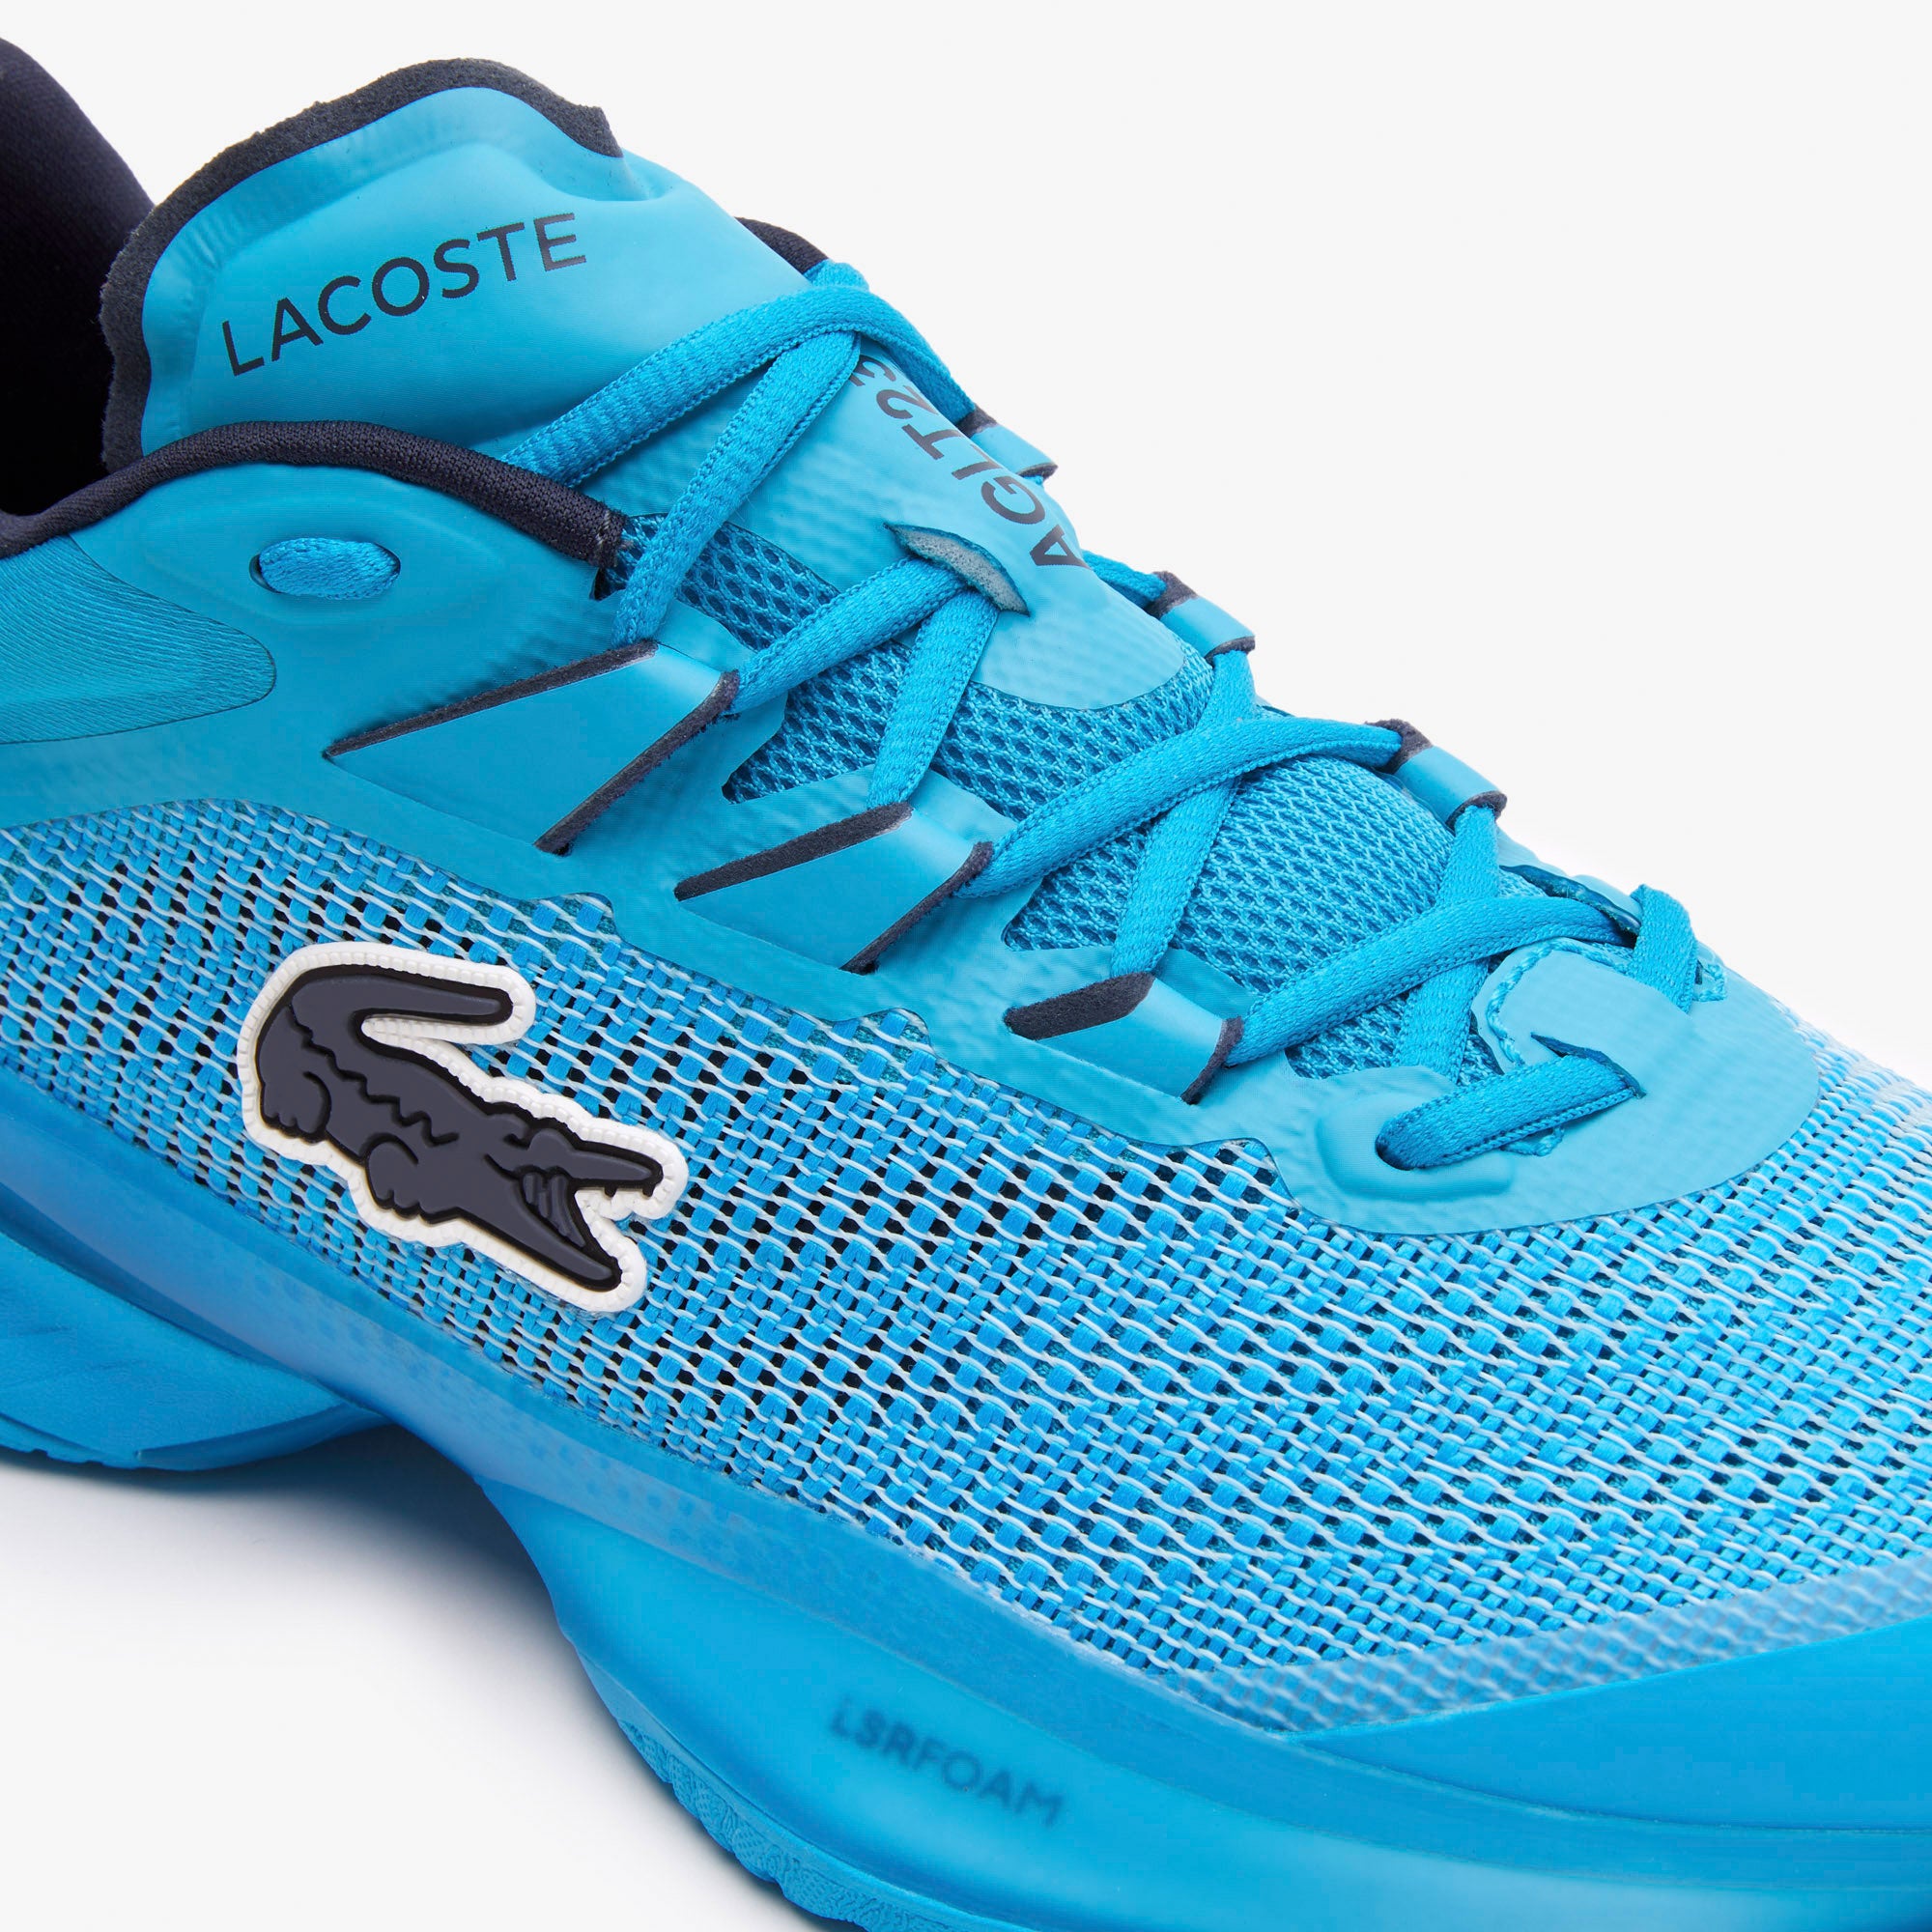 Lacoste AG-LT23 Ultra Men's Tennis Shoes Blue (6)